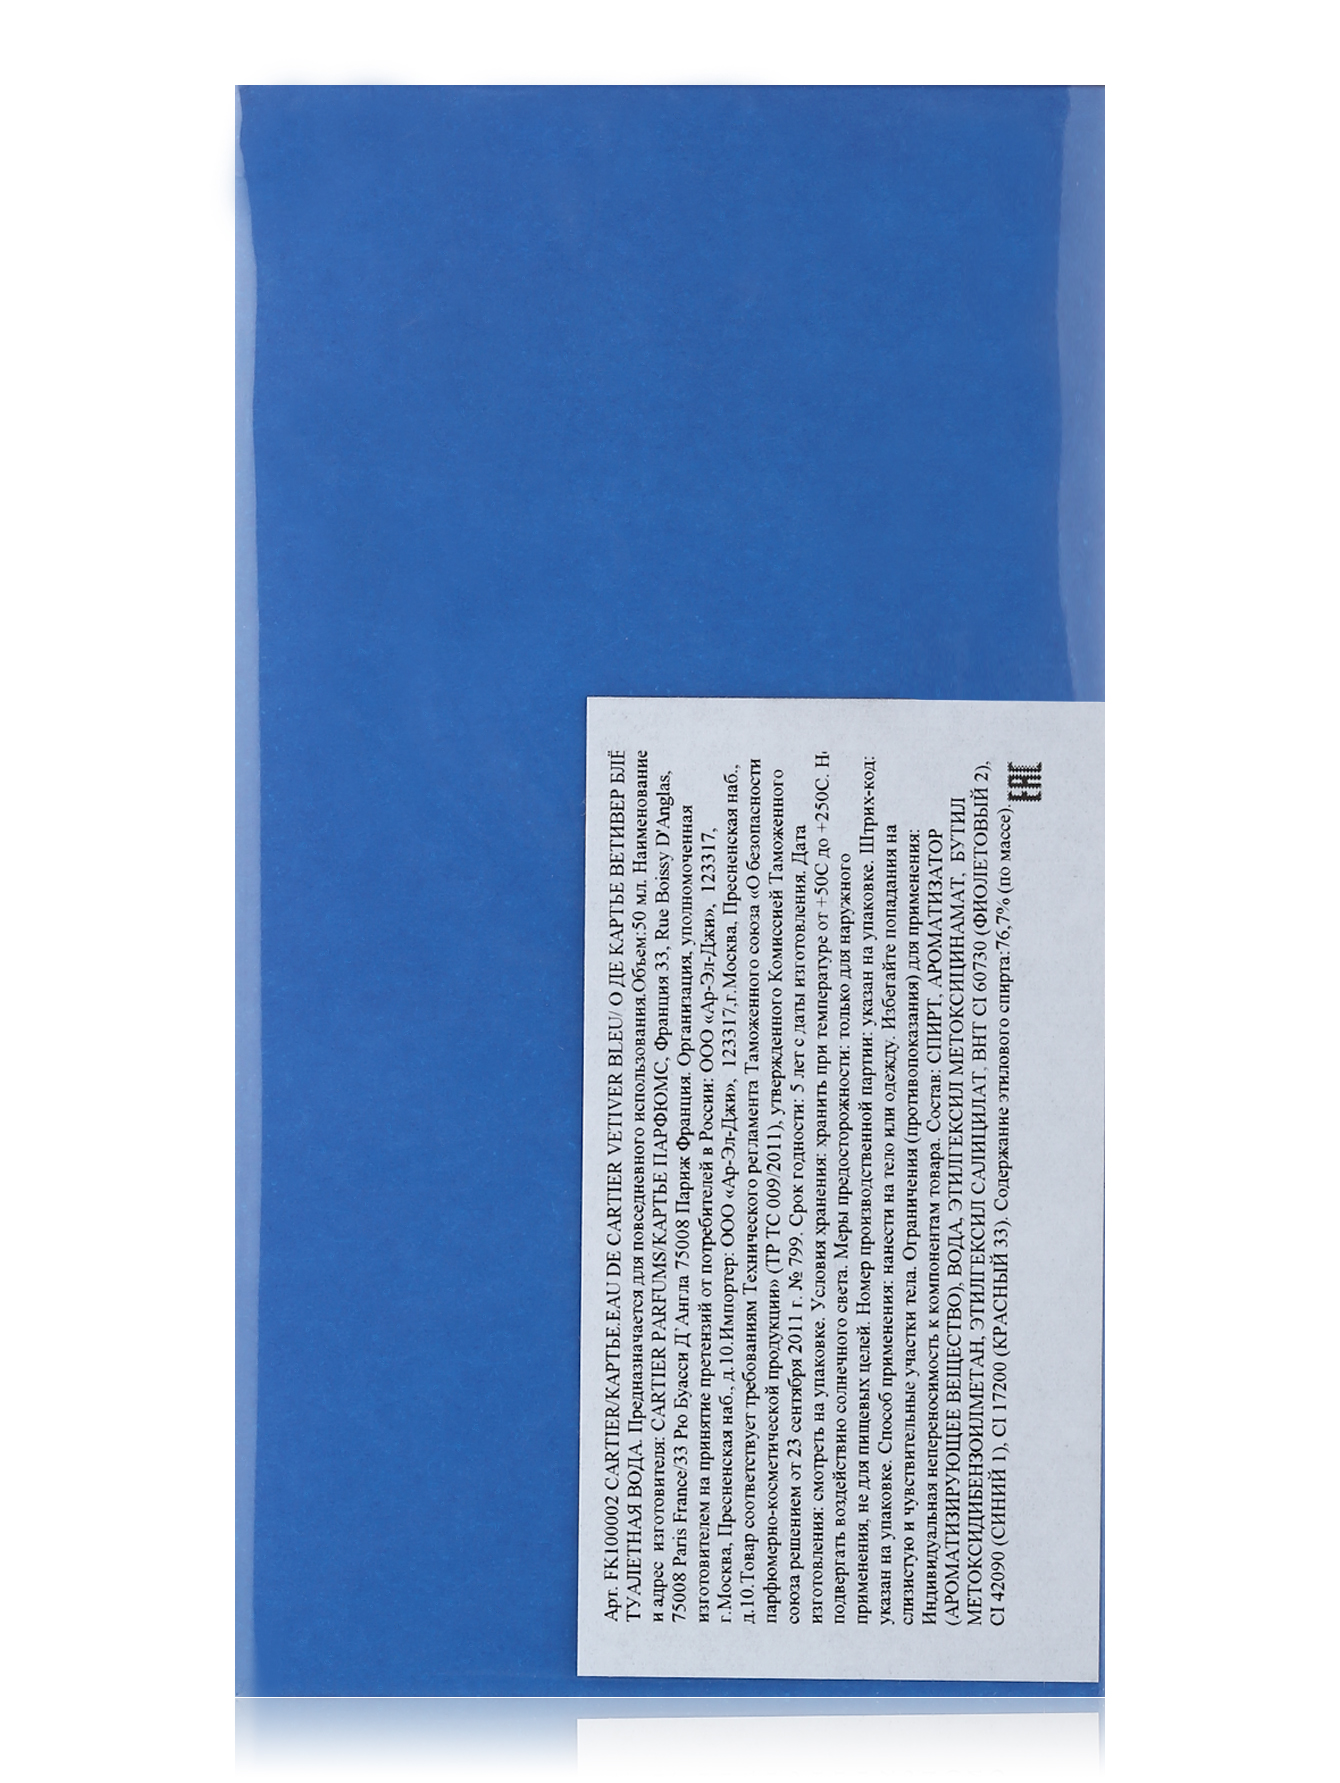  Туалетная вода - Eau de Cartier Vetivier Bleu, 100ml - Модель Верх-Низ